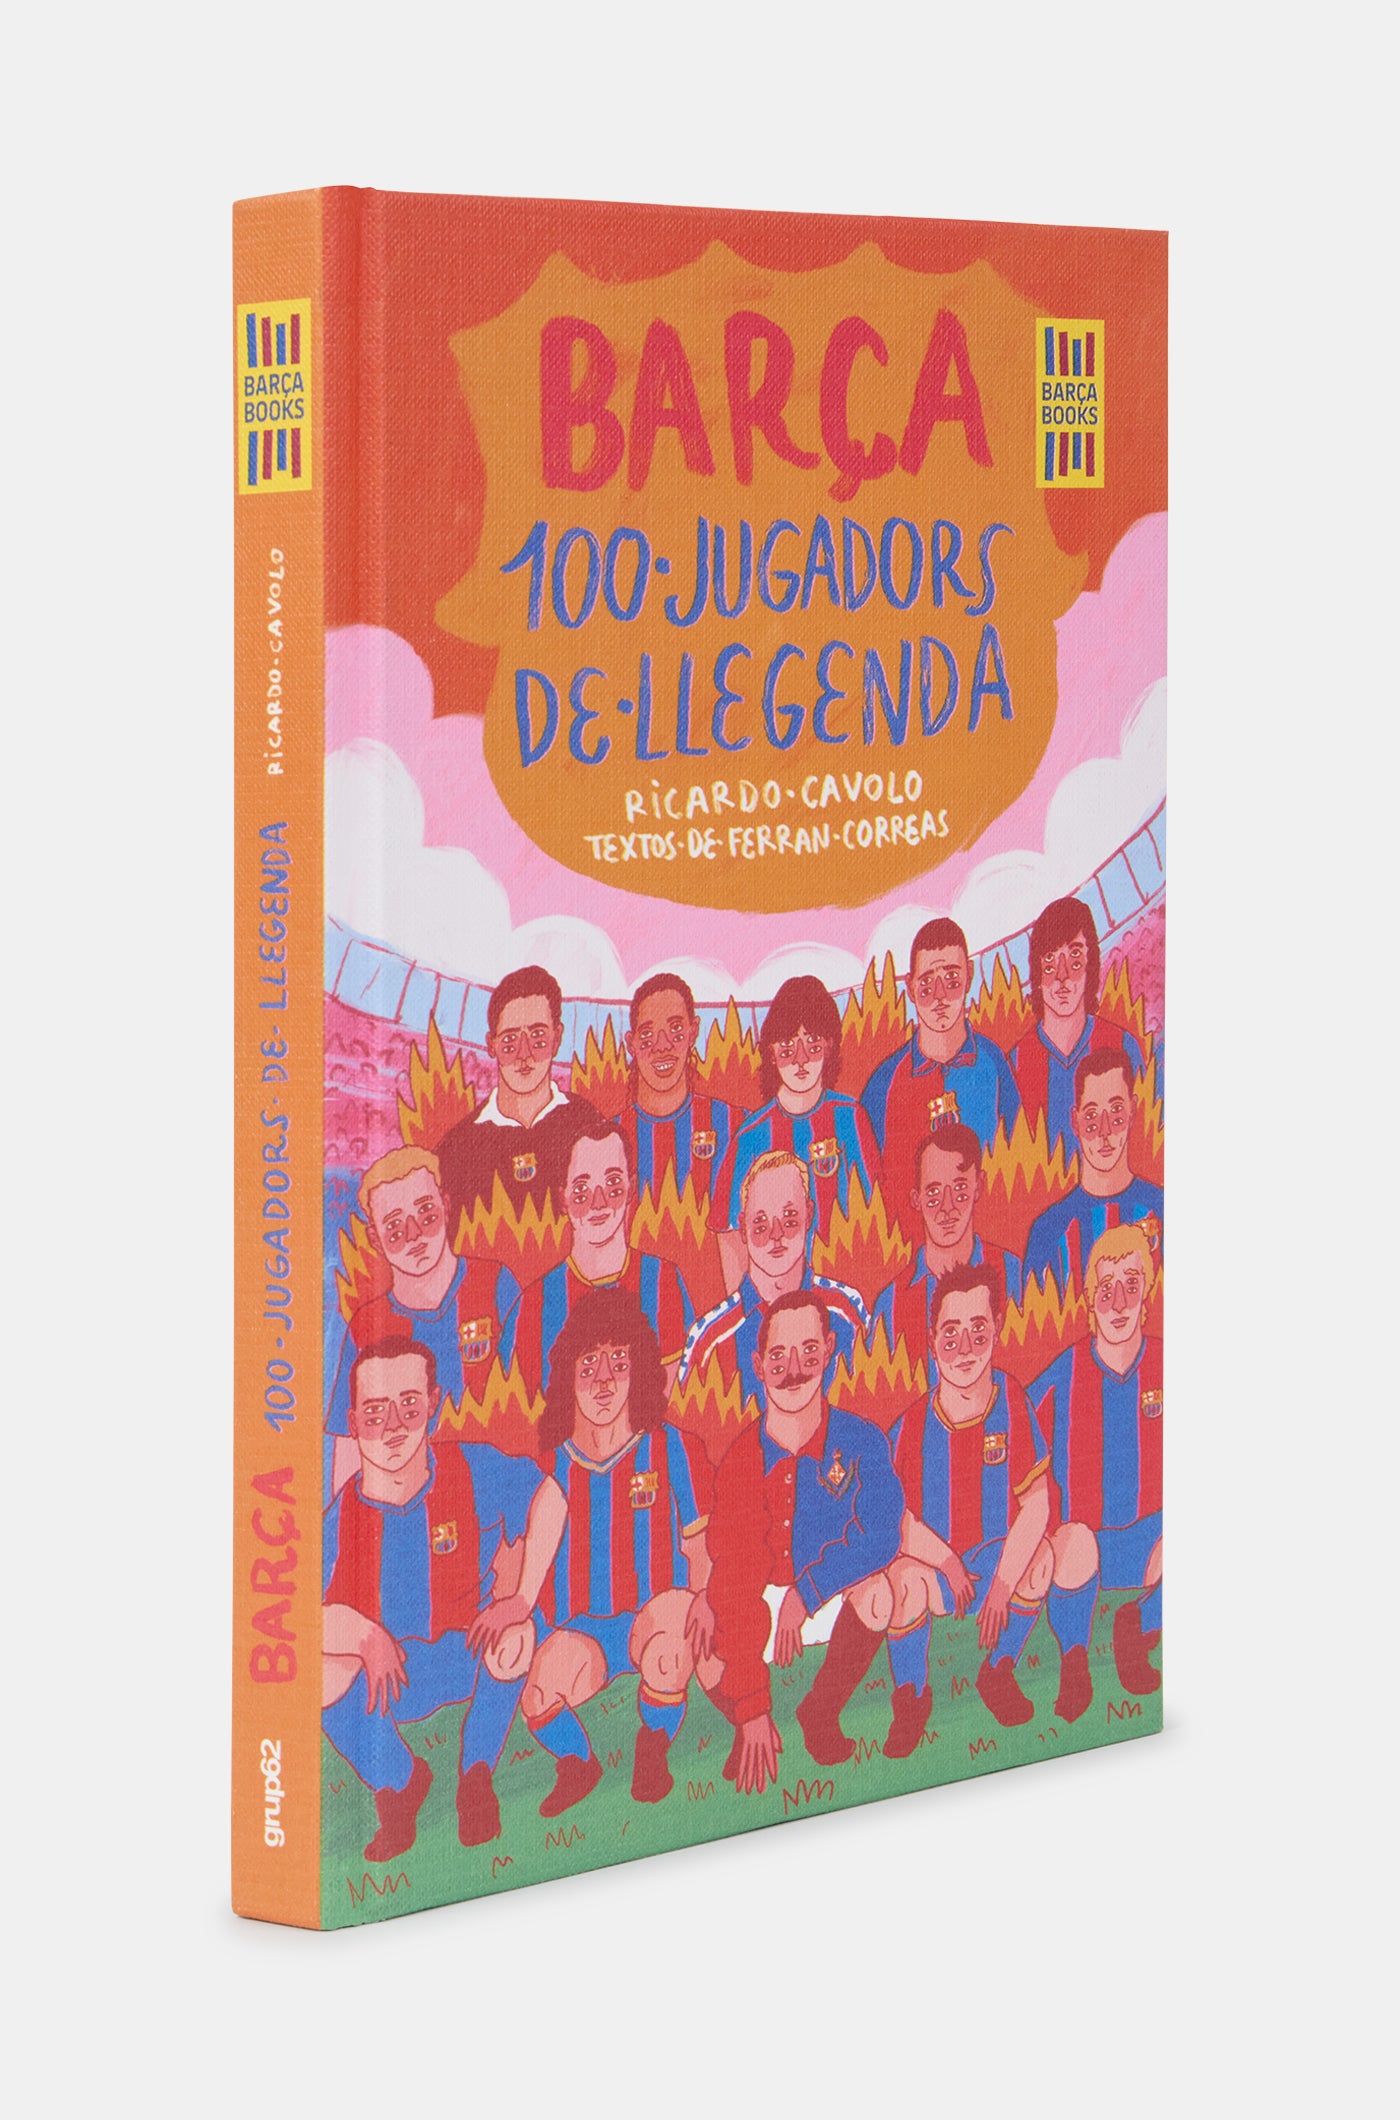 Libro "Barça. 100 jugadores de leyenda"